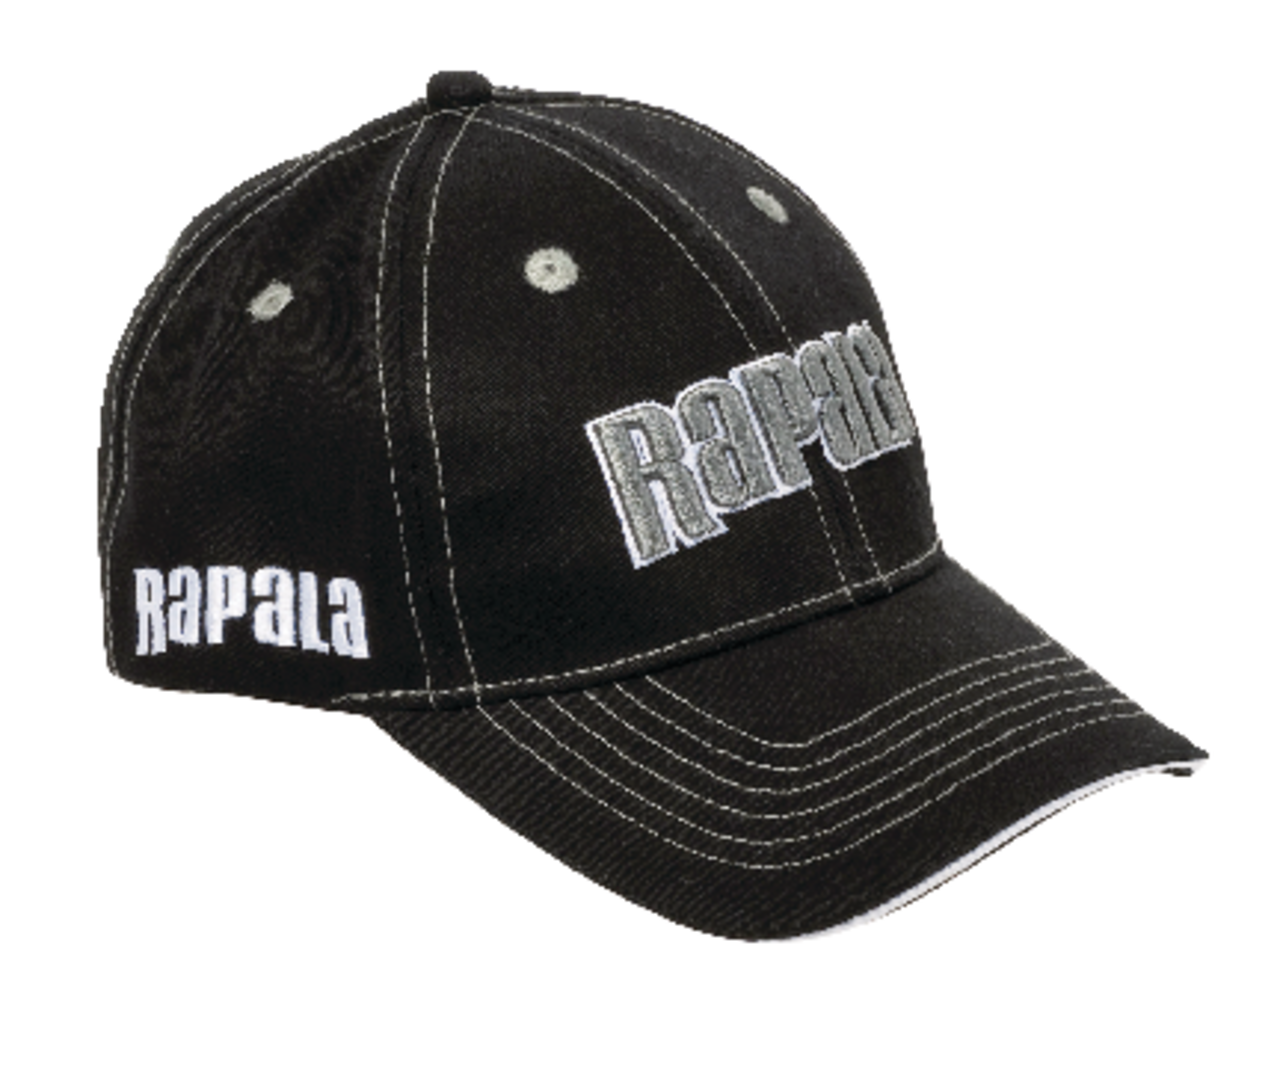 Rapala Classic Baseball Cap